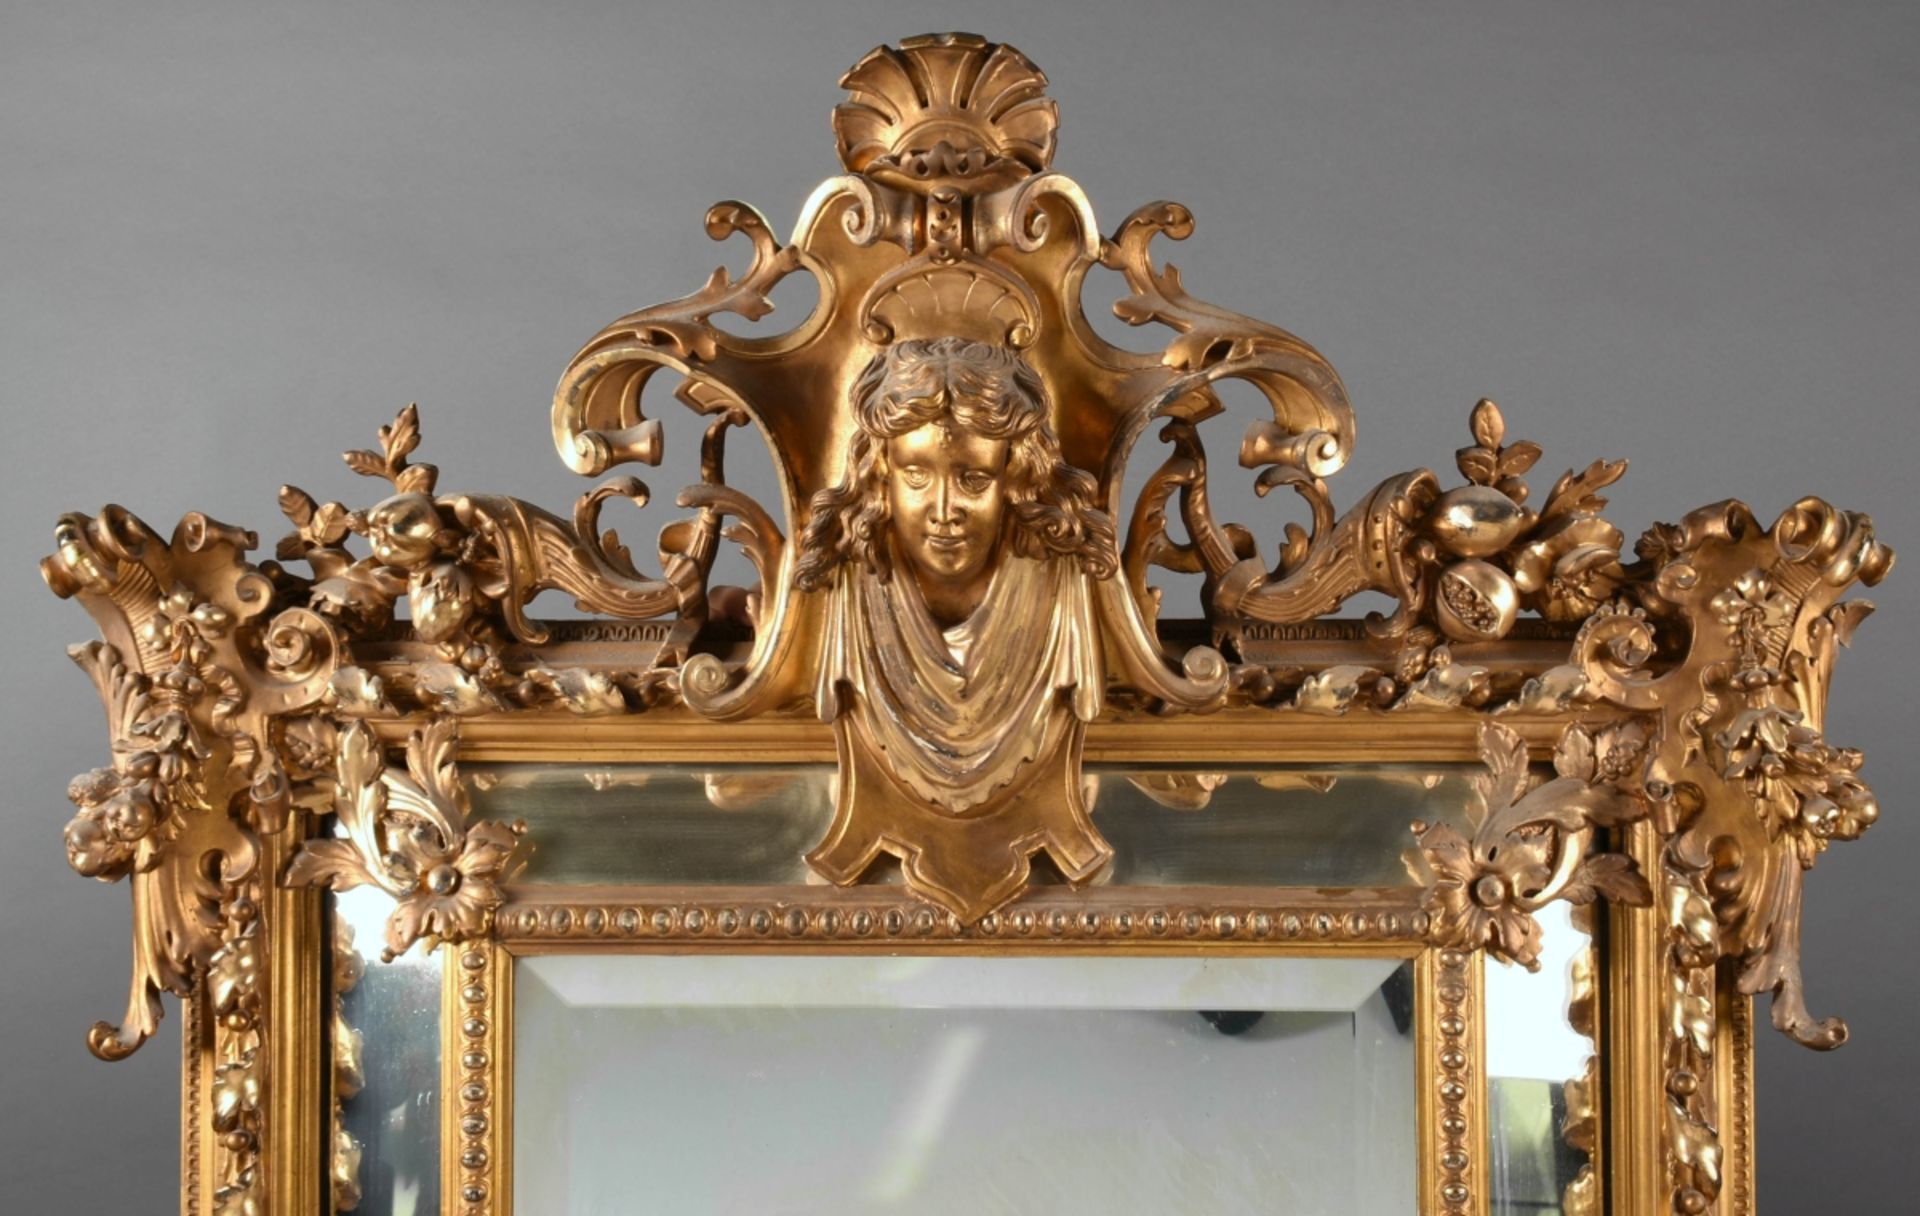 Prunkwandspiegel Holz geschnitzt und goldstuckiert, aufwendig gearbeiteter neobarocker Wandspiegel - Bild 3 aus 4